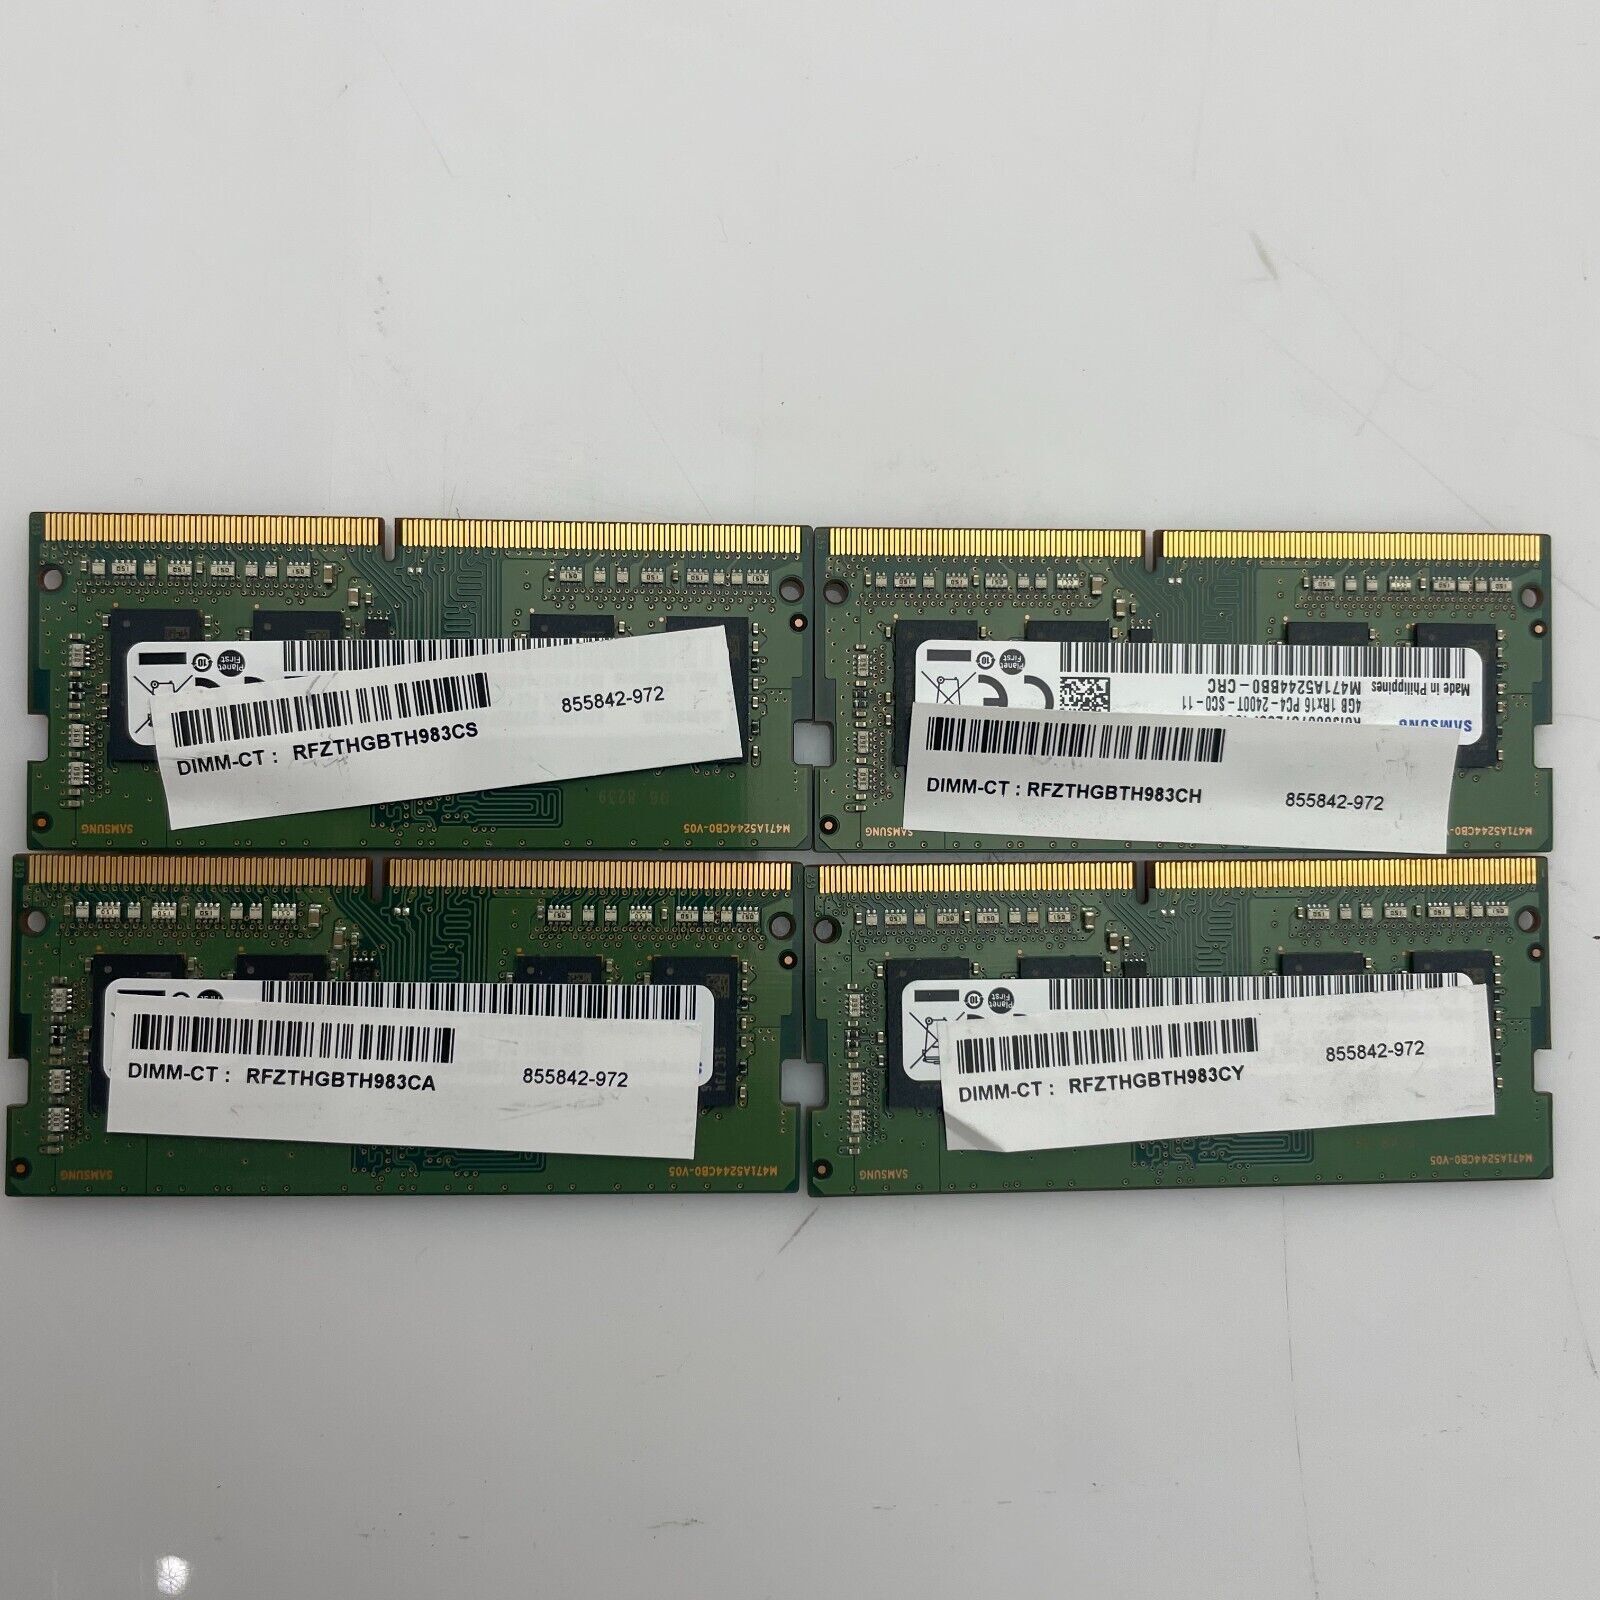 Lot of 4 - HP 855842-972 4GB PC4-19200 DDR4-2400 Non-ECC SODIMM MEMORY